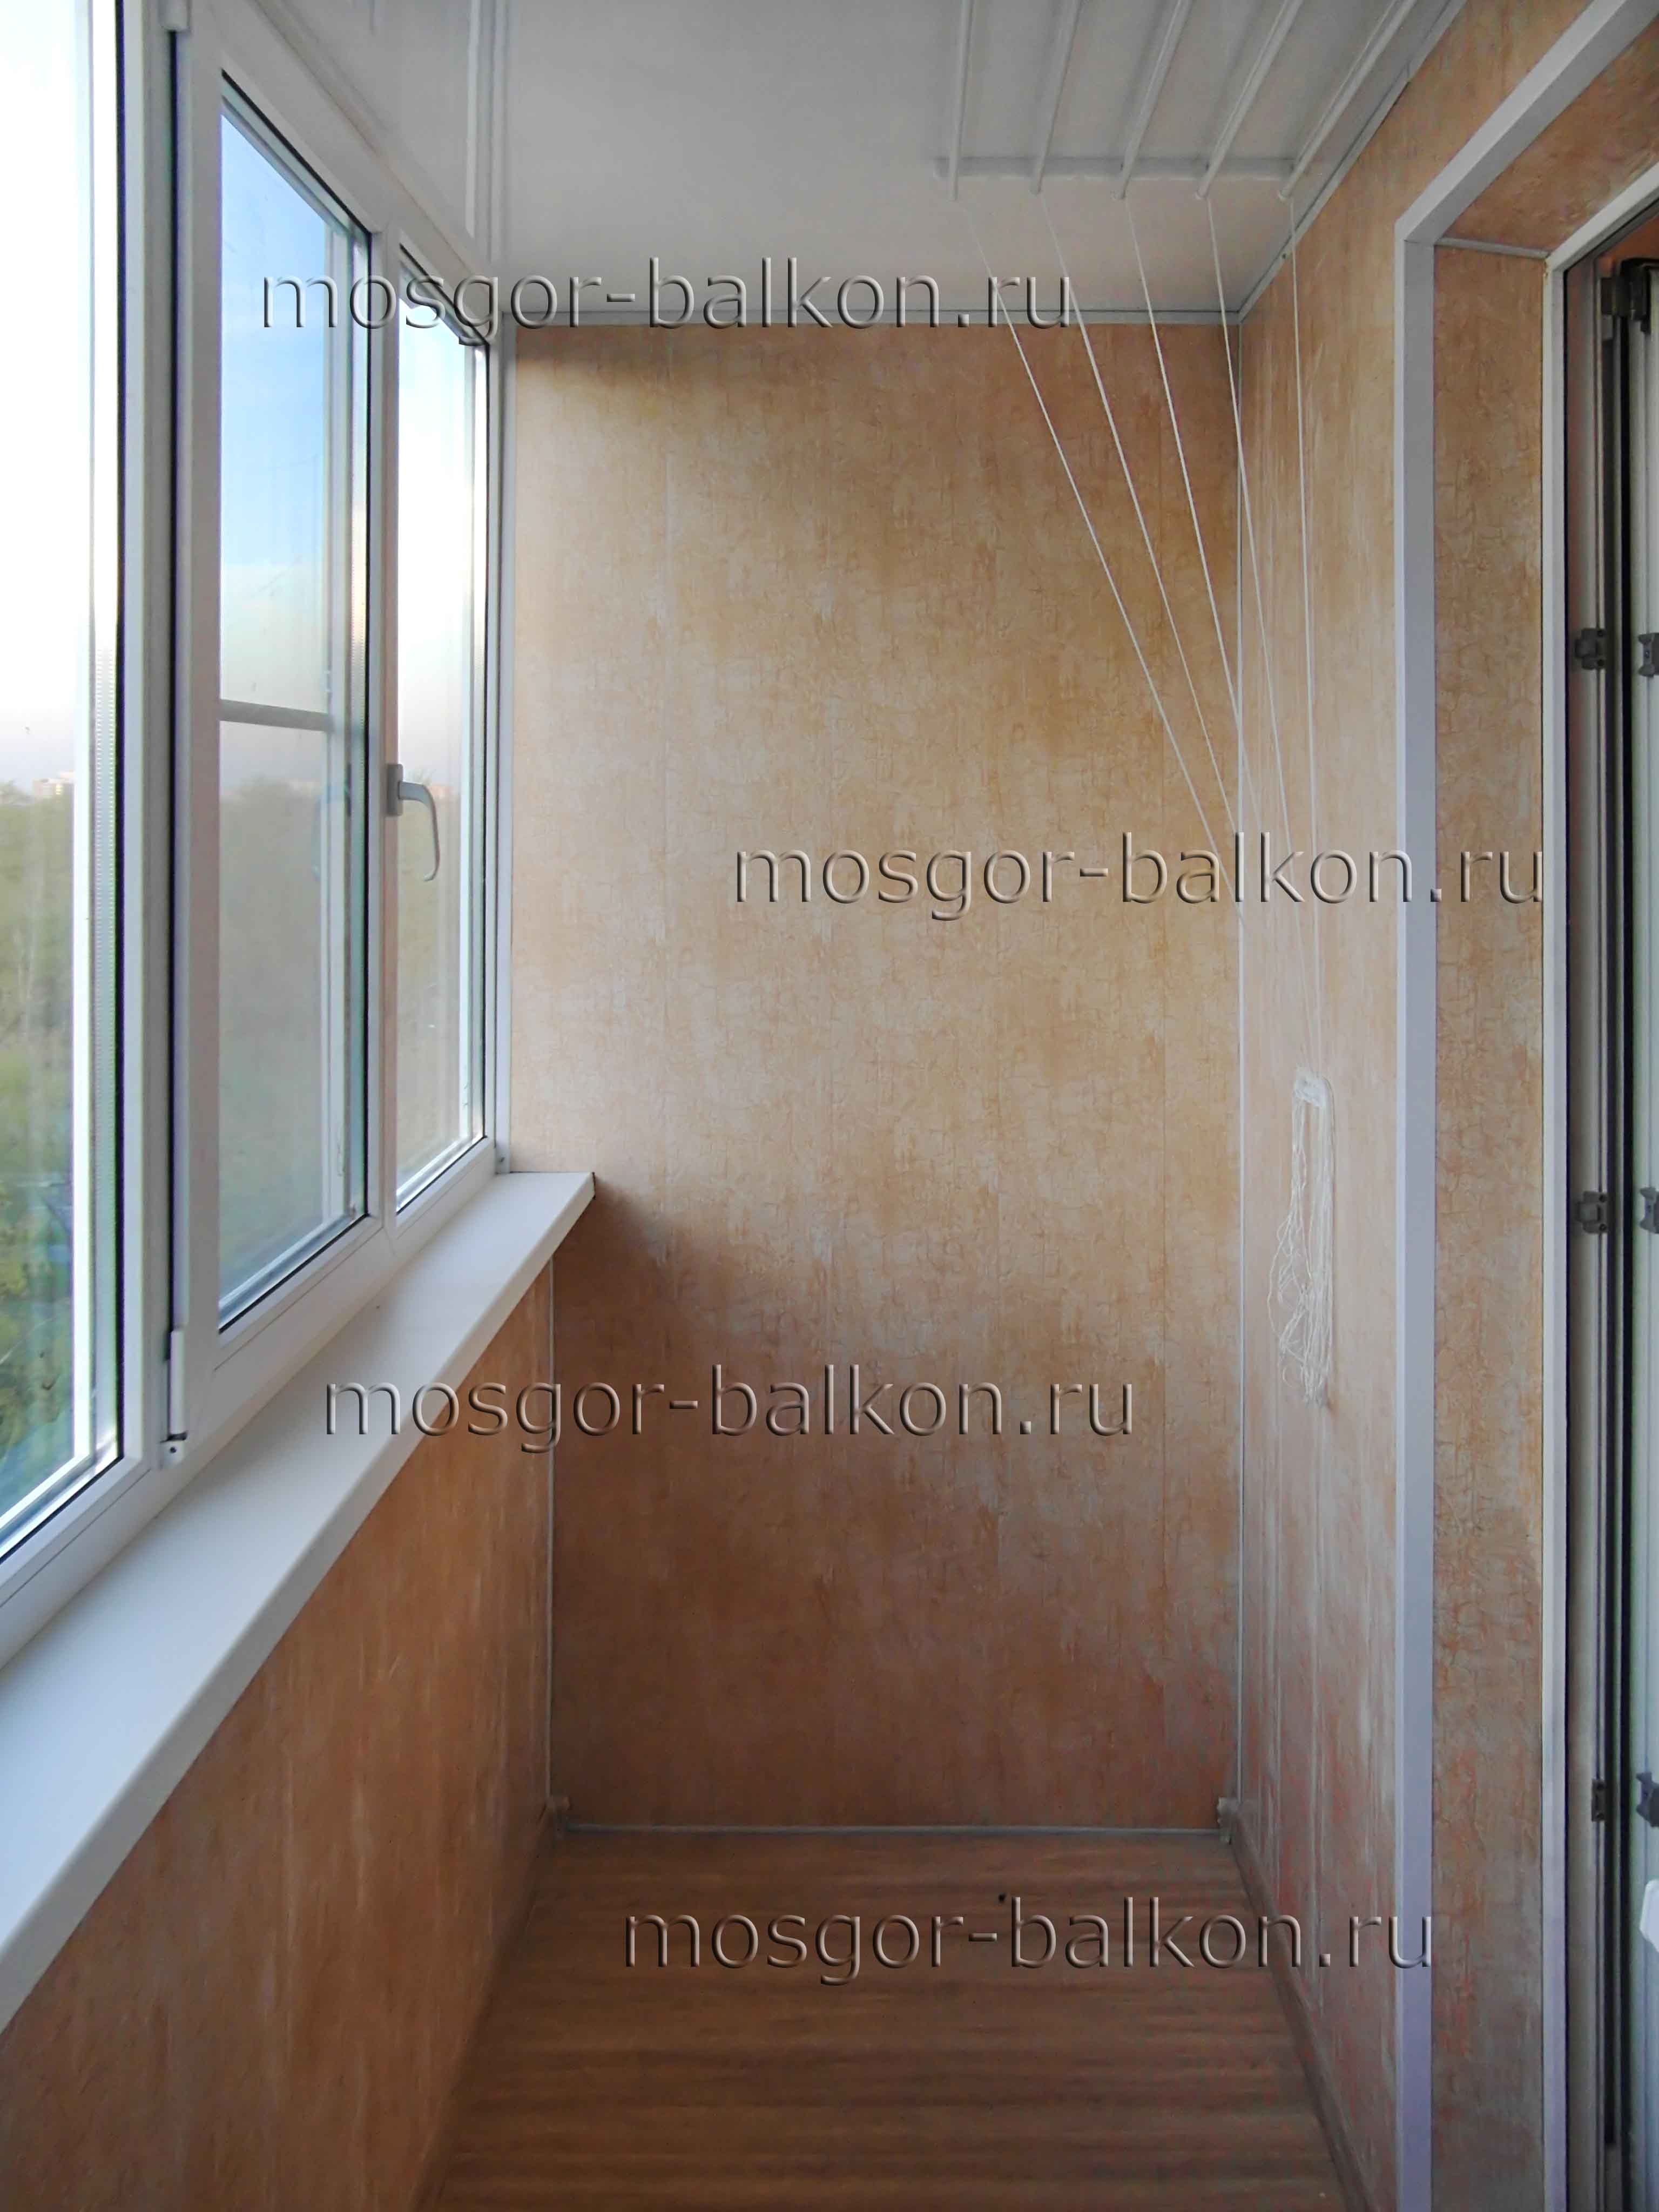 Отделка балкона пластиковыми панелями. Mosgor-balkon.ru